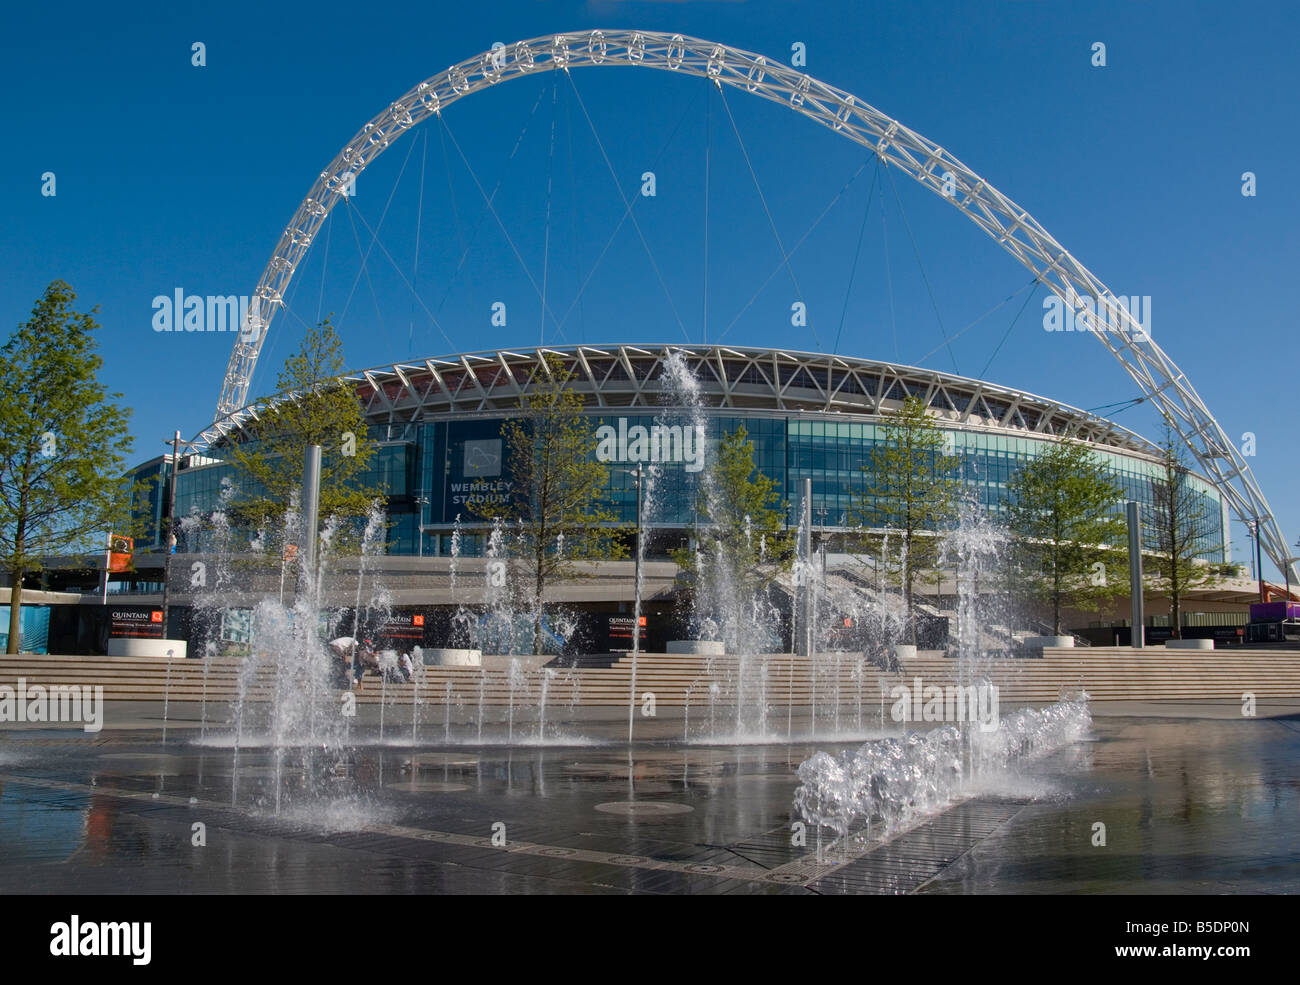 Nuevo Estadio de Wembley, Londres, Inglaterra, Europa Foto de stock